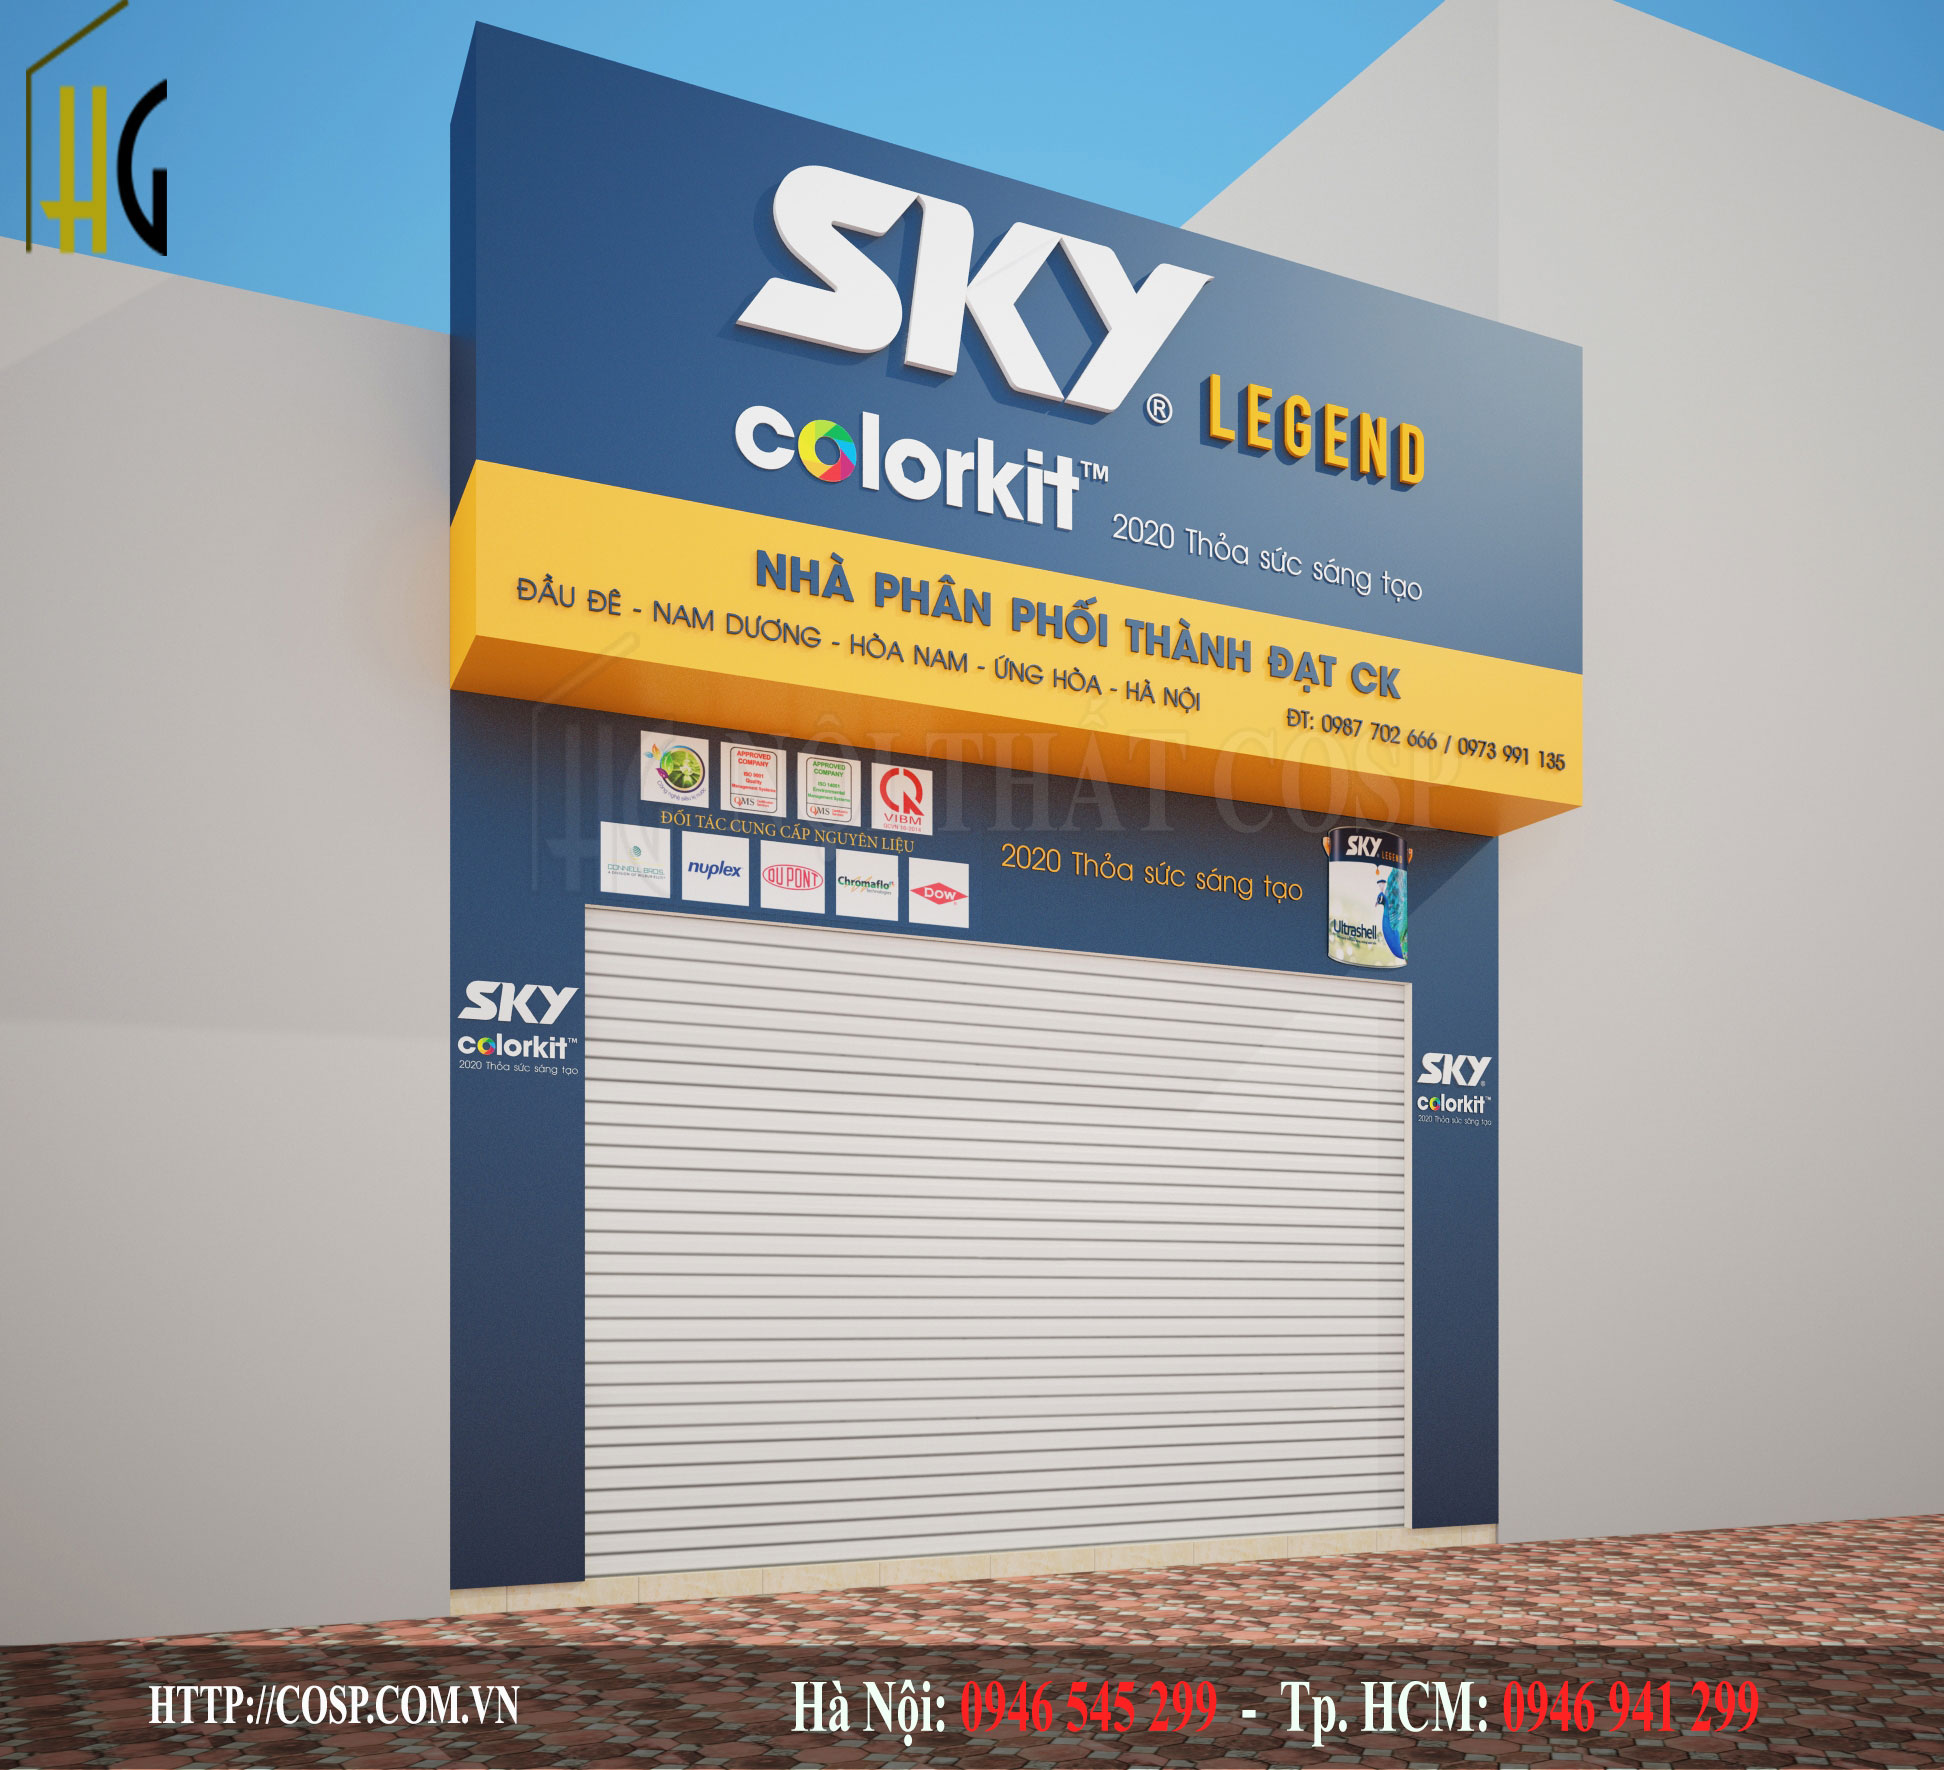 Thiết kế cửa hàng sơn sky color kit 4